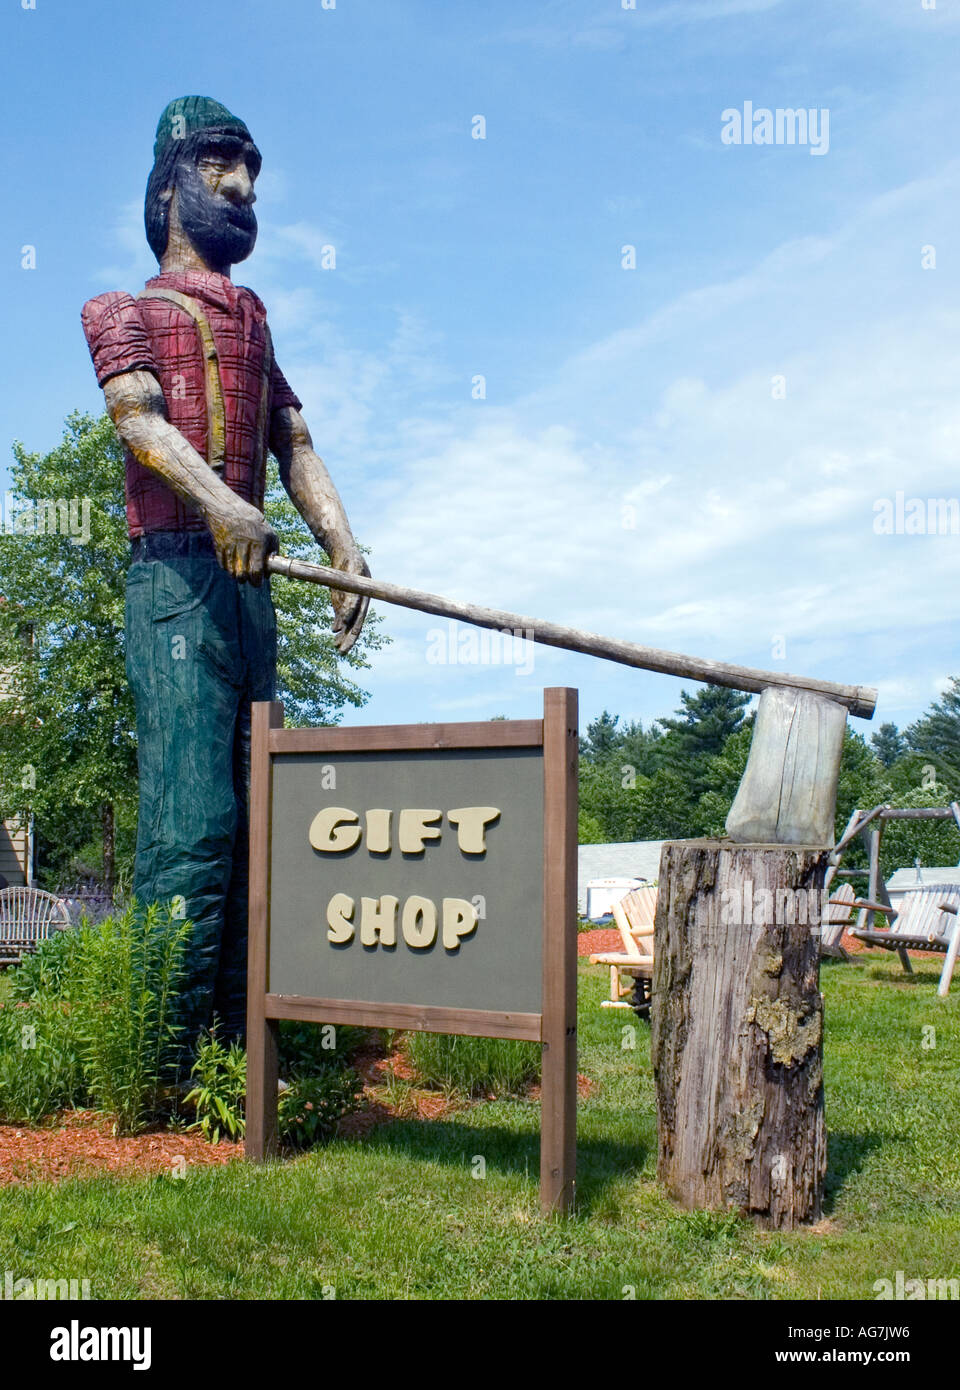 Paul Bunyan mit ax Holzschnitzerei Statue in einem Andenkenladen in Bellingham Massachusetts Stockfoto